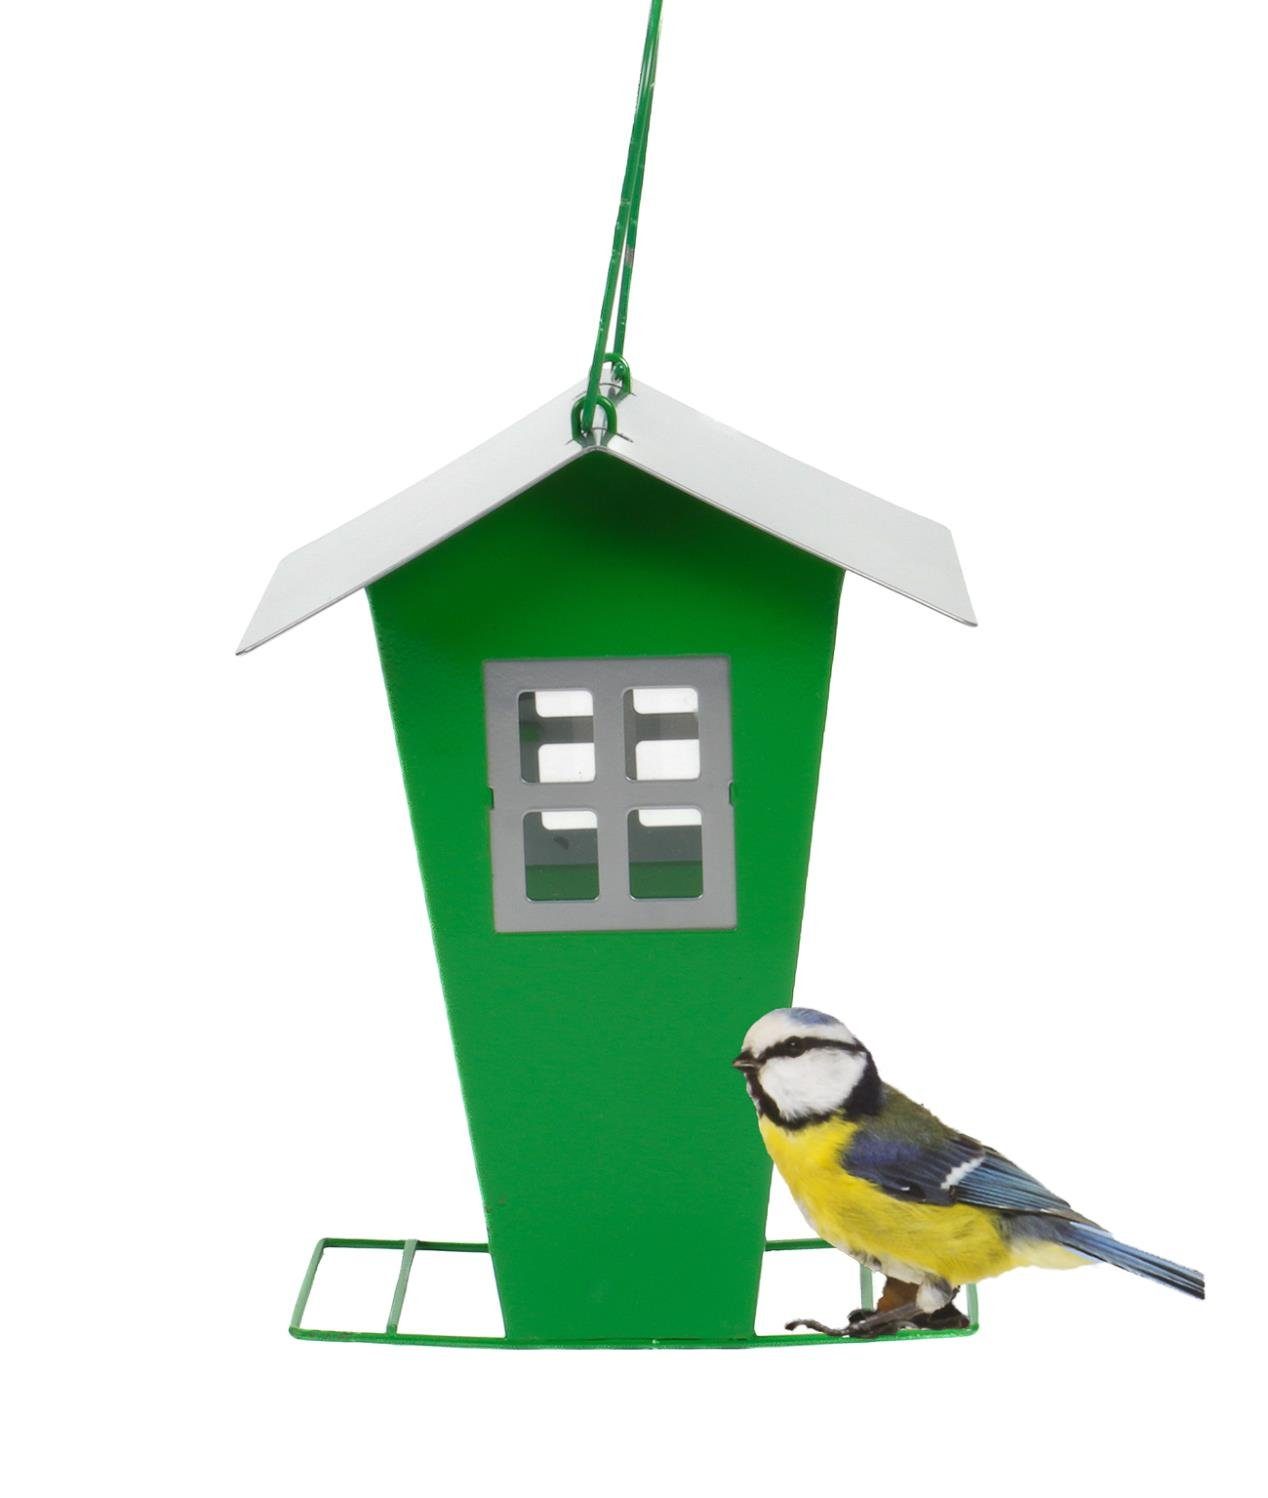 Befüllen zum Vogelhaus mit Stellen Metall Dach Futtersilo, von abnehmbares Bubble-Store oder Hängen, zum grün Vogelhaus Metallschlaufe Anflugstreben und Vogelfutter,